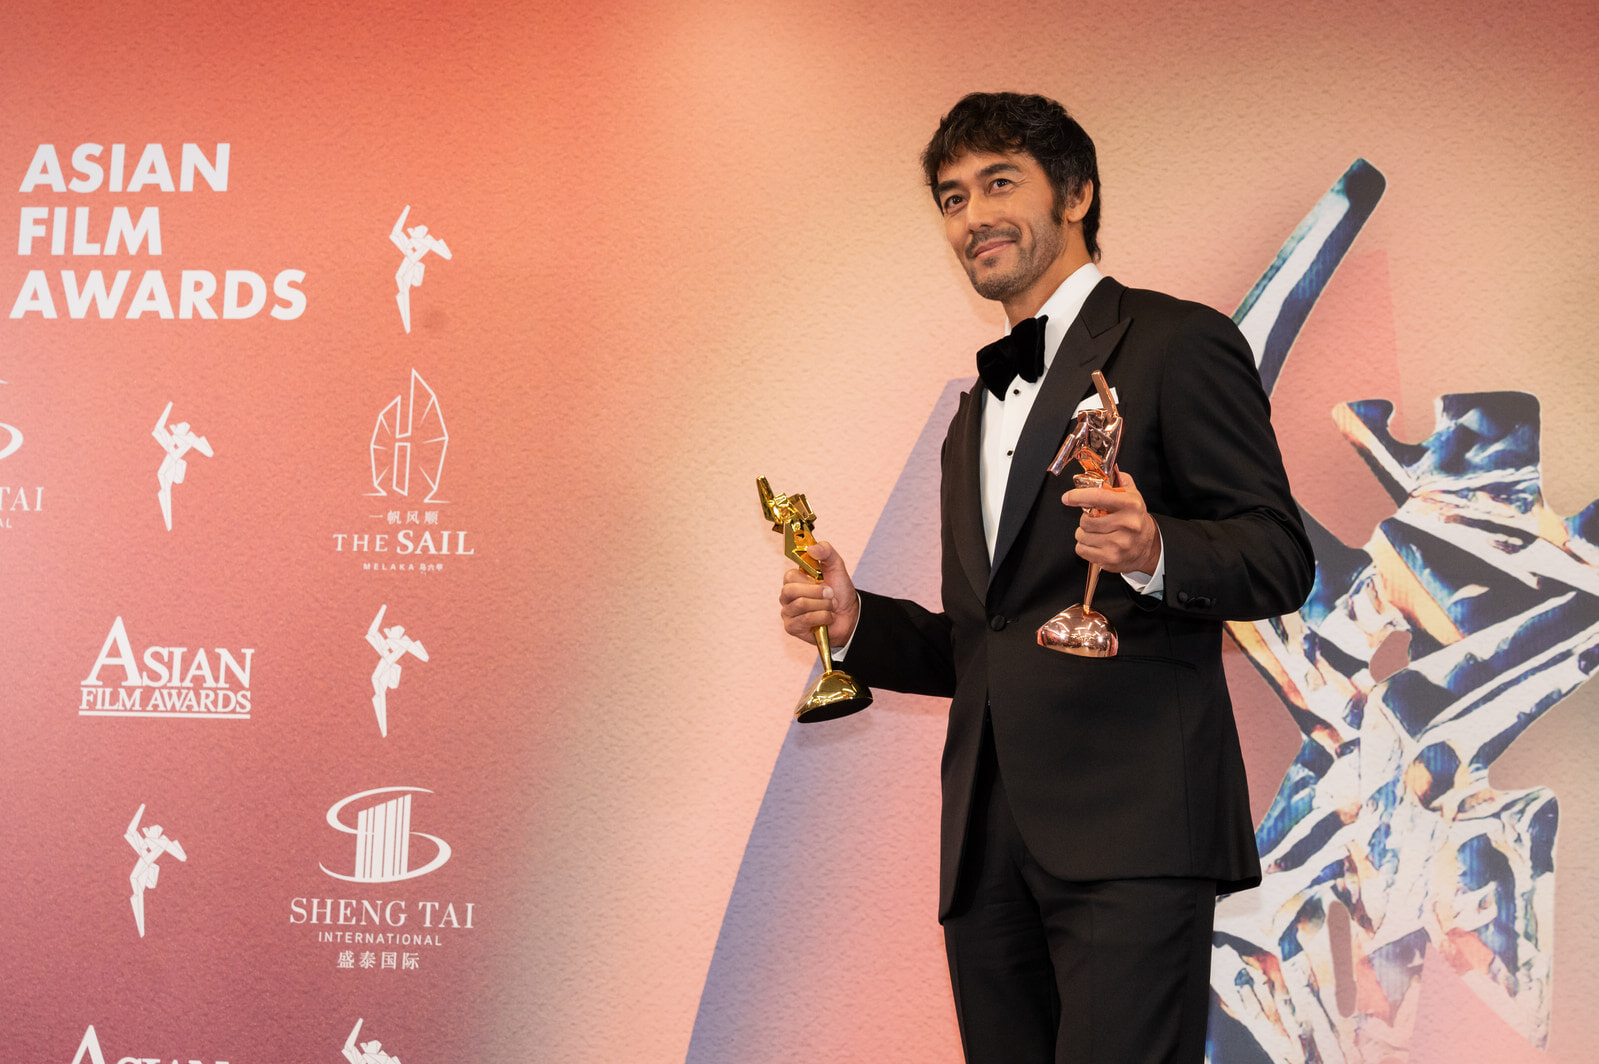 阿部寛さん_ABE Hiroshi_Excellence in Asian Cinema Award_AFA16 x STI - Best Dresses from the Red Carpet Award photo2.jpg